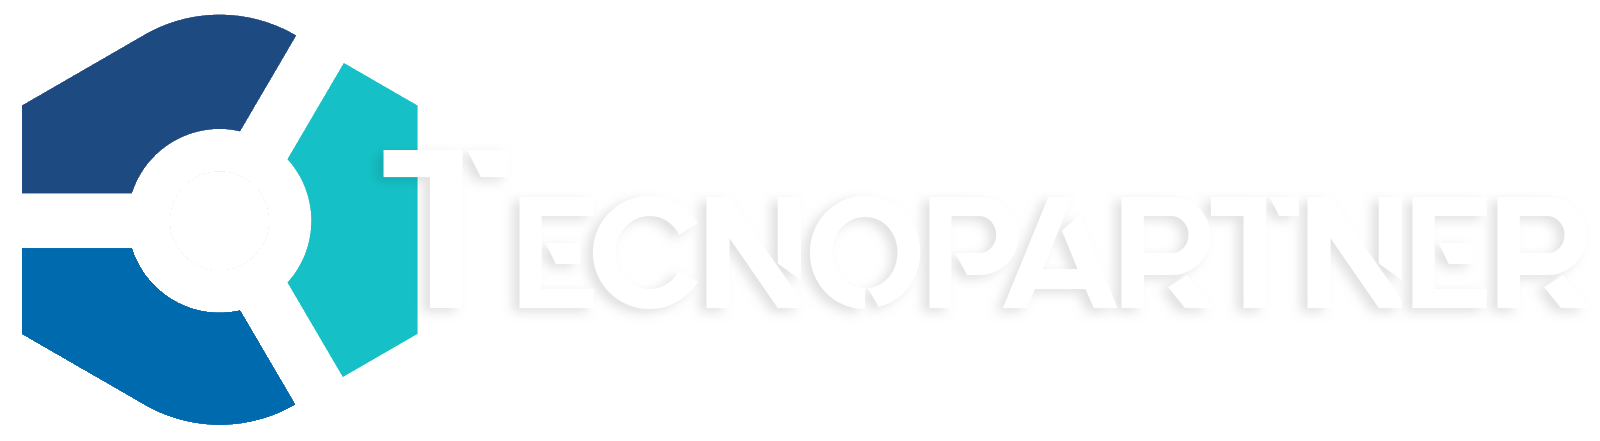 tecnopartner-logo-bianco